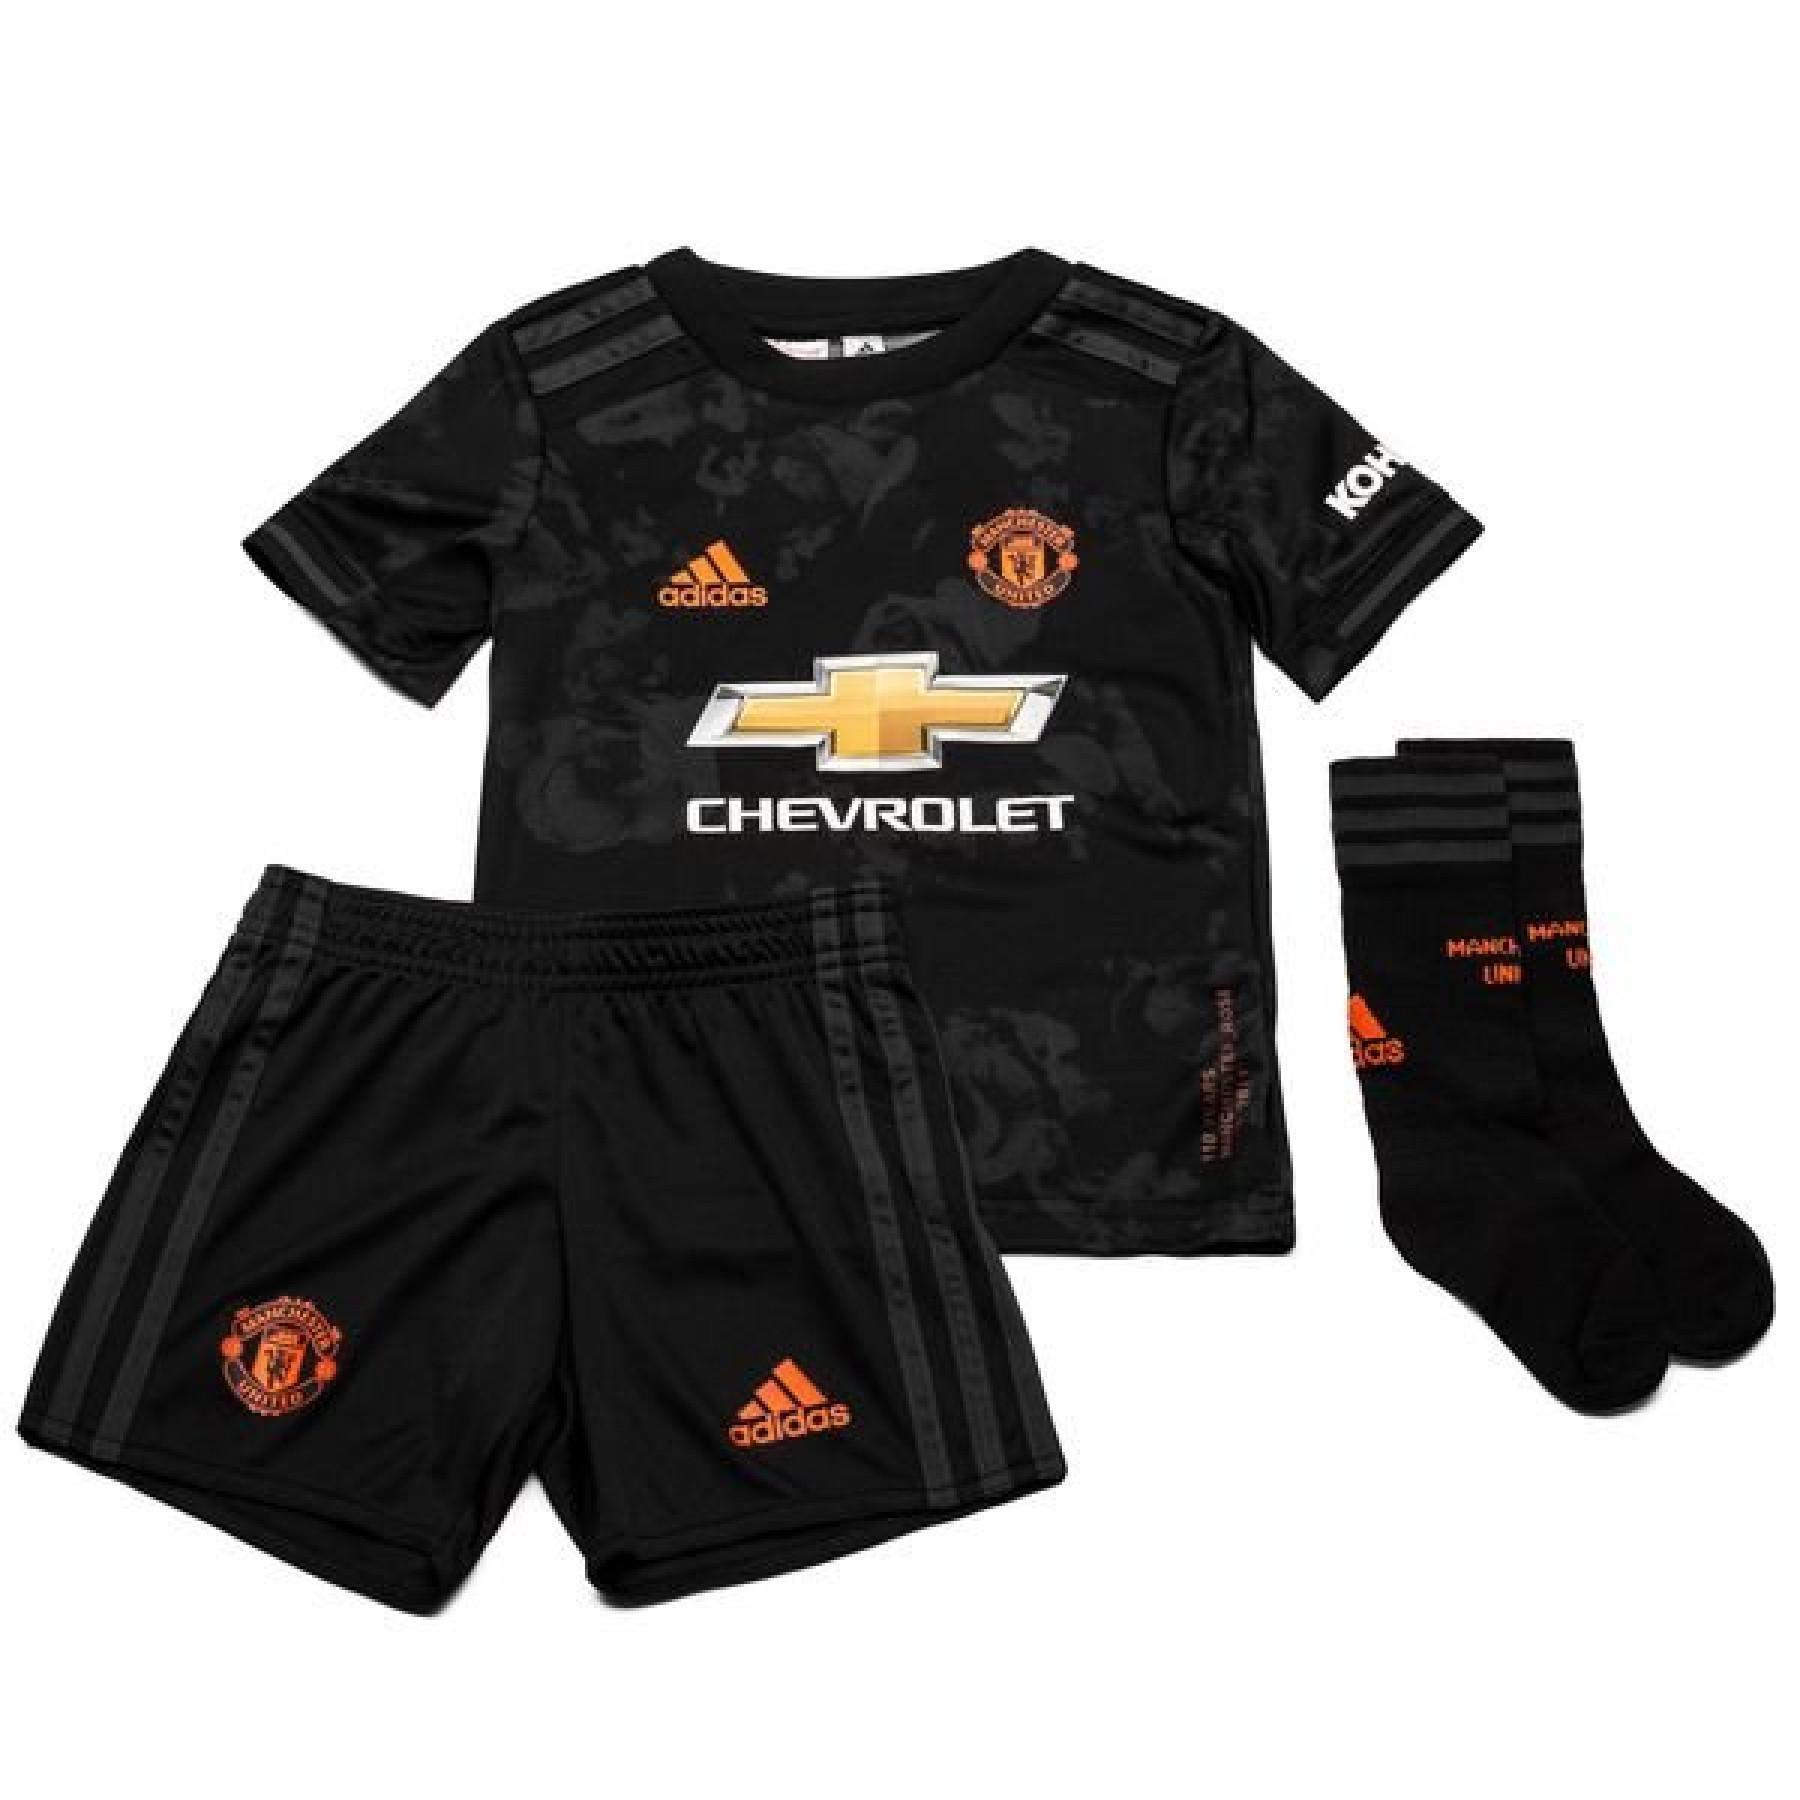 Mini-kit third Manchester United 2019/20